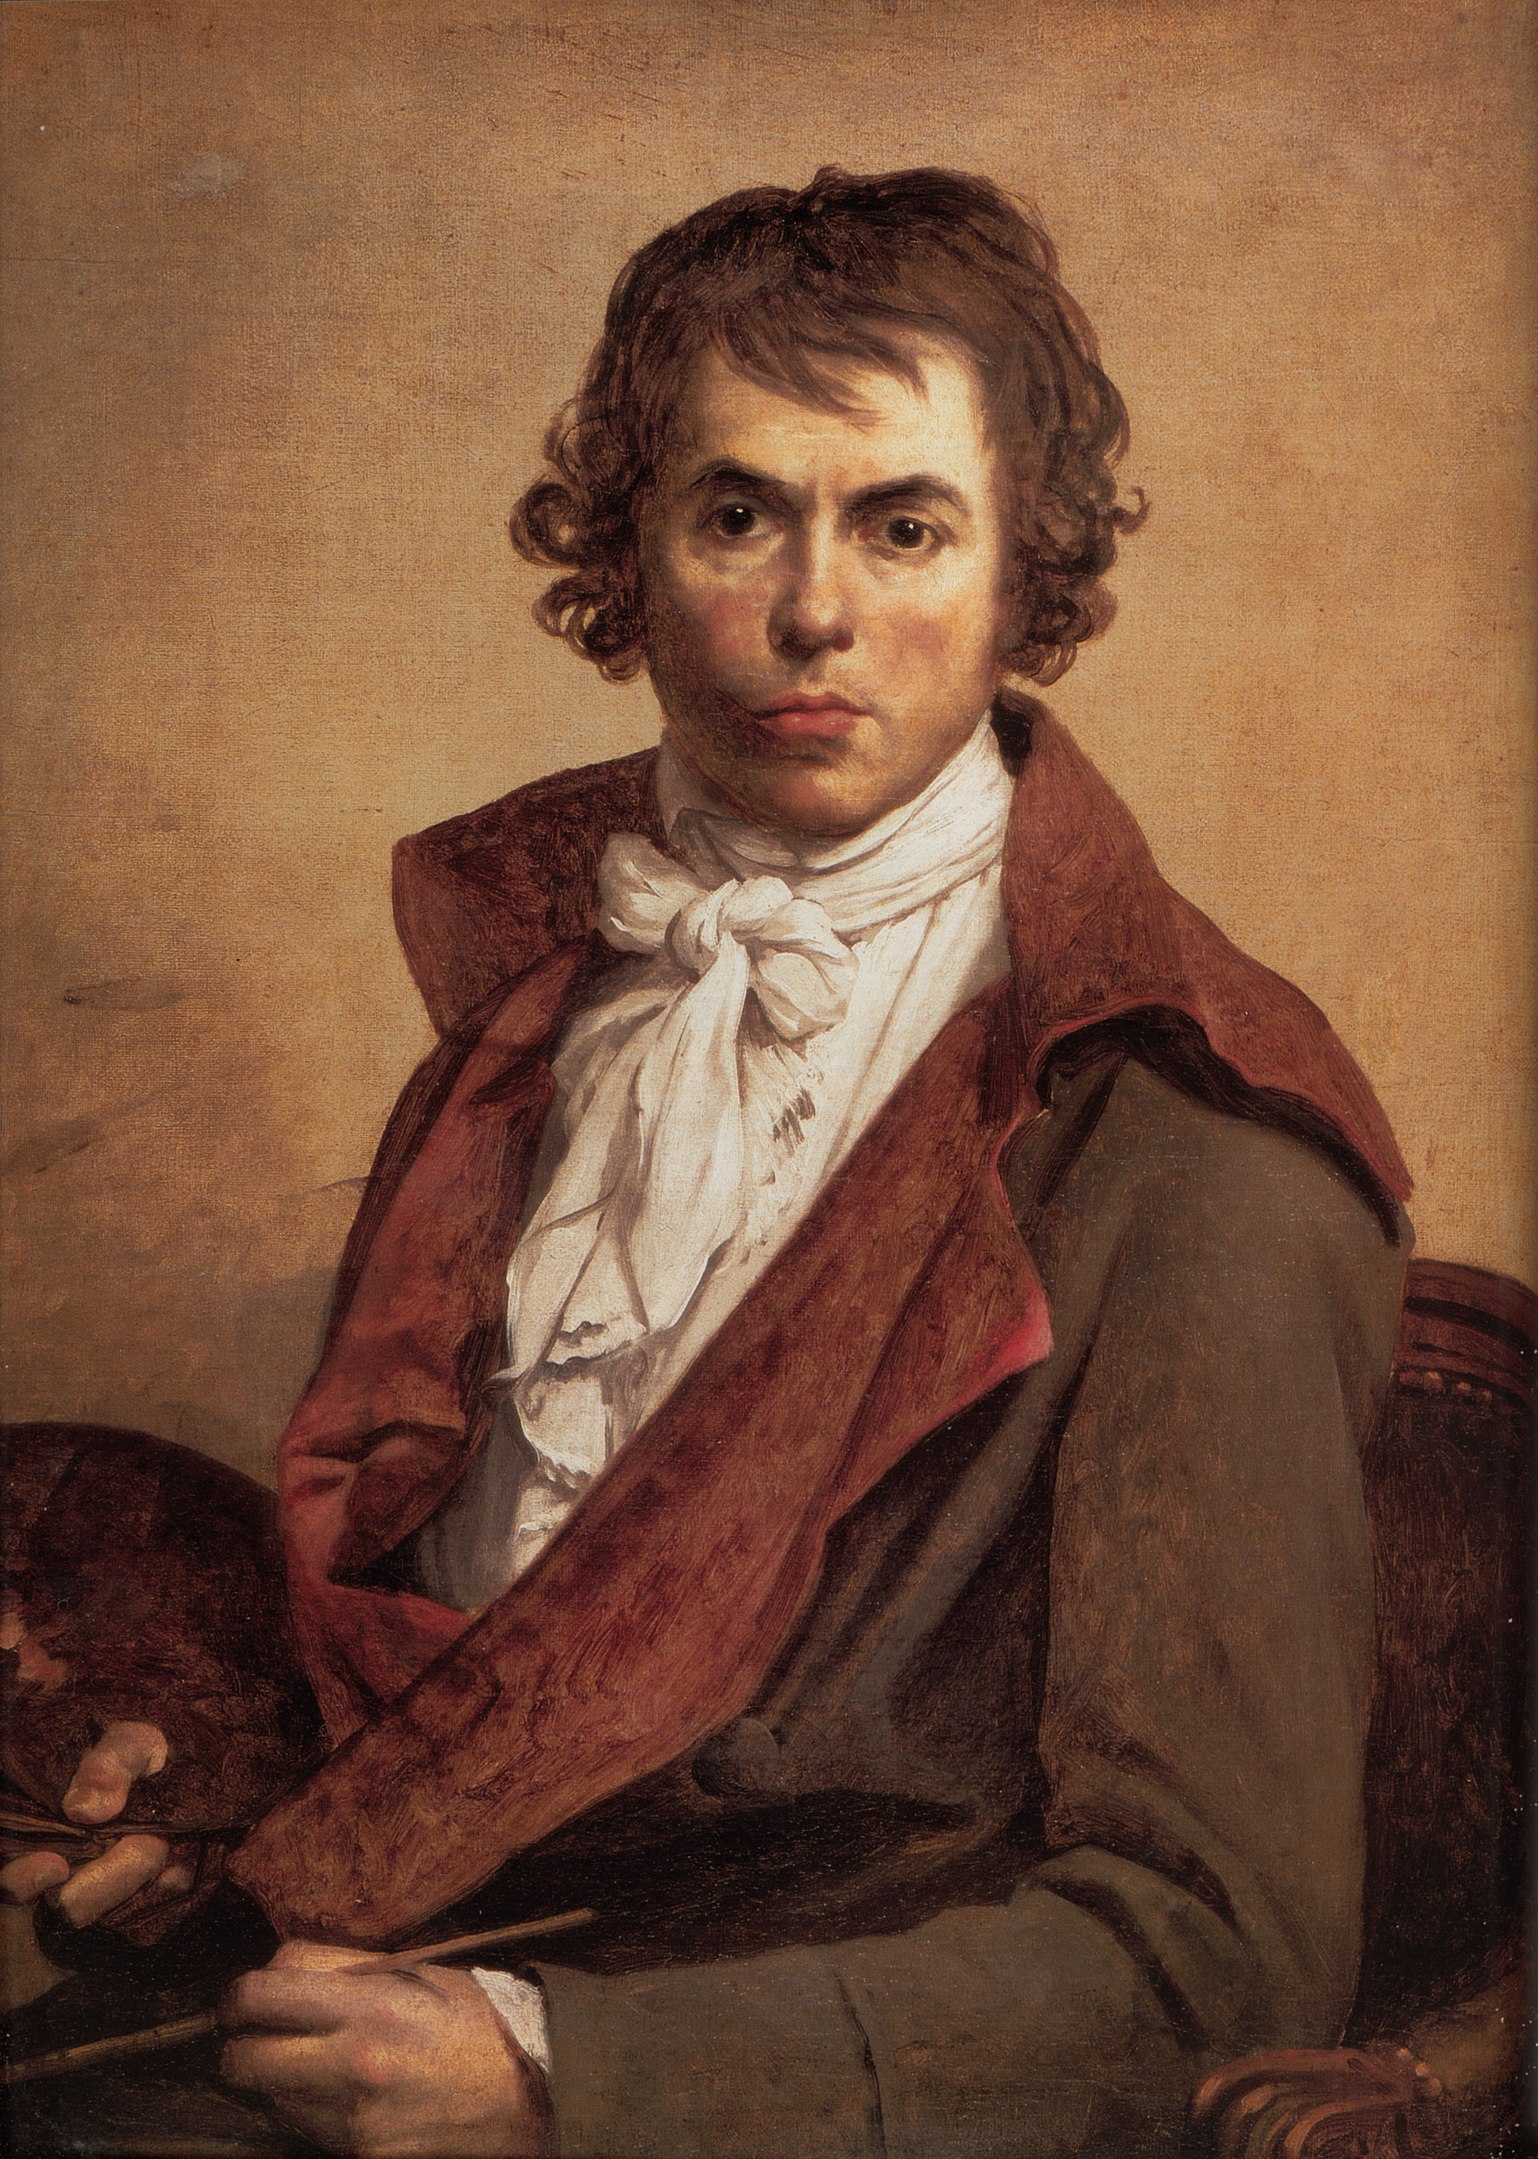 Jacques-Louis David - August 30, 1748 - December 29, 1825